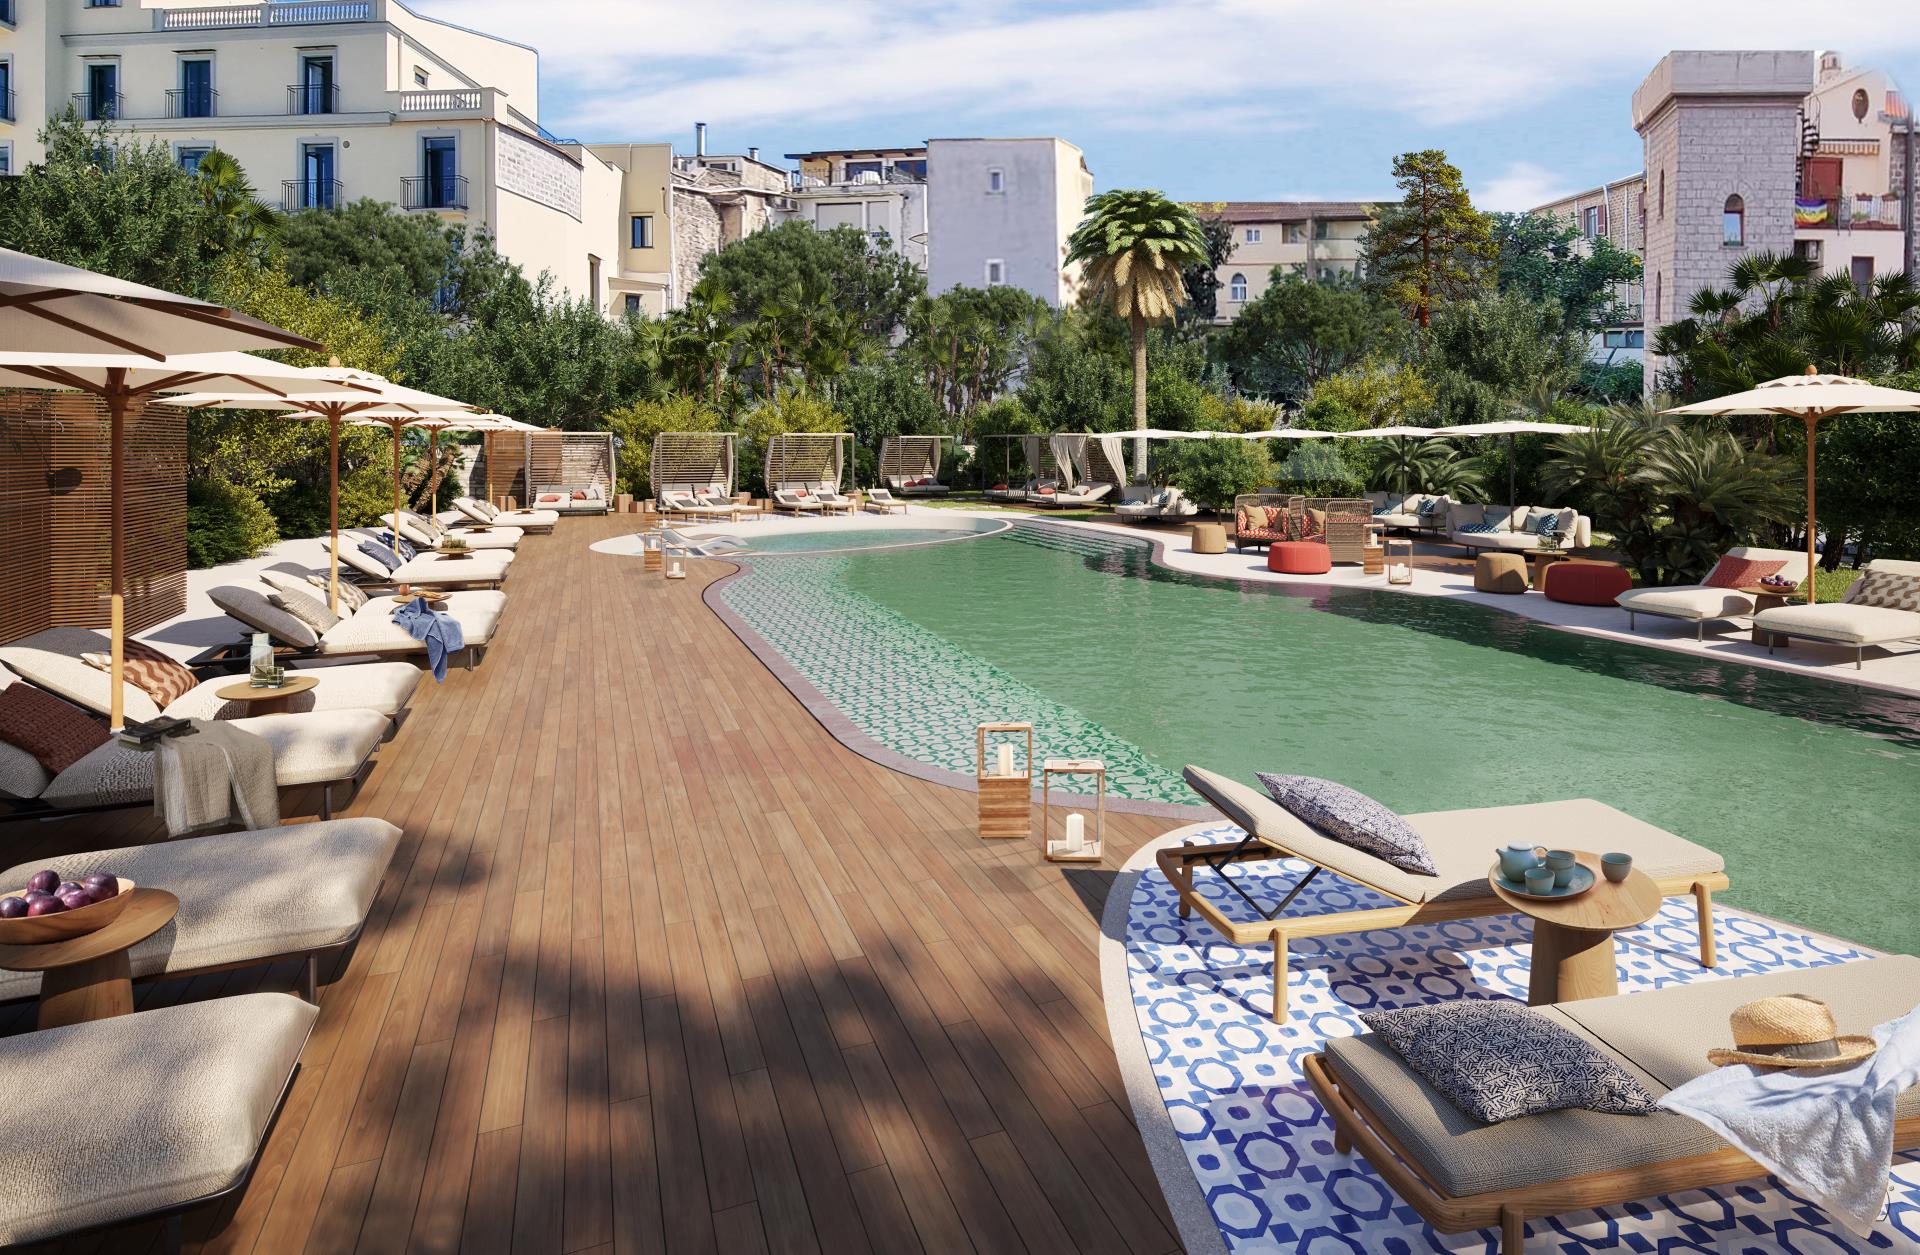 
Novo hotel de luxo tem inspiração mediterrânea no coração de Sorrento, Itália